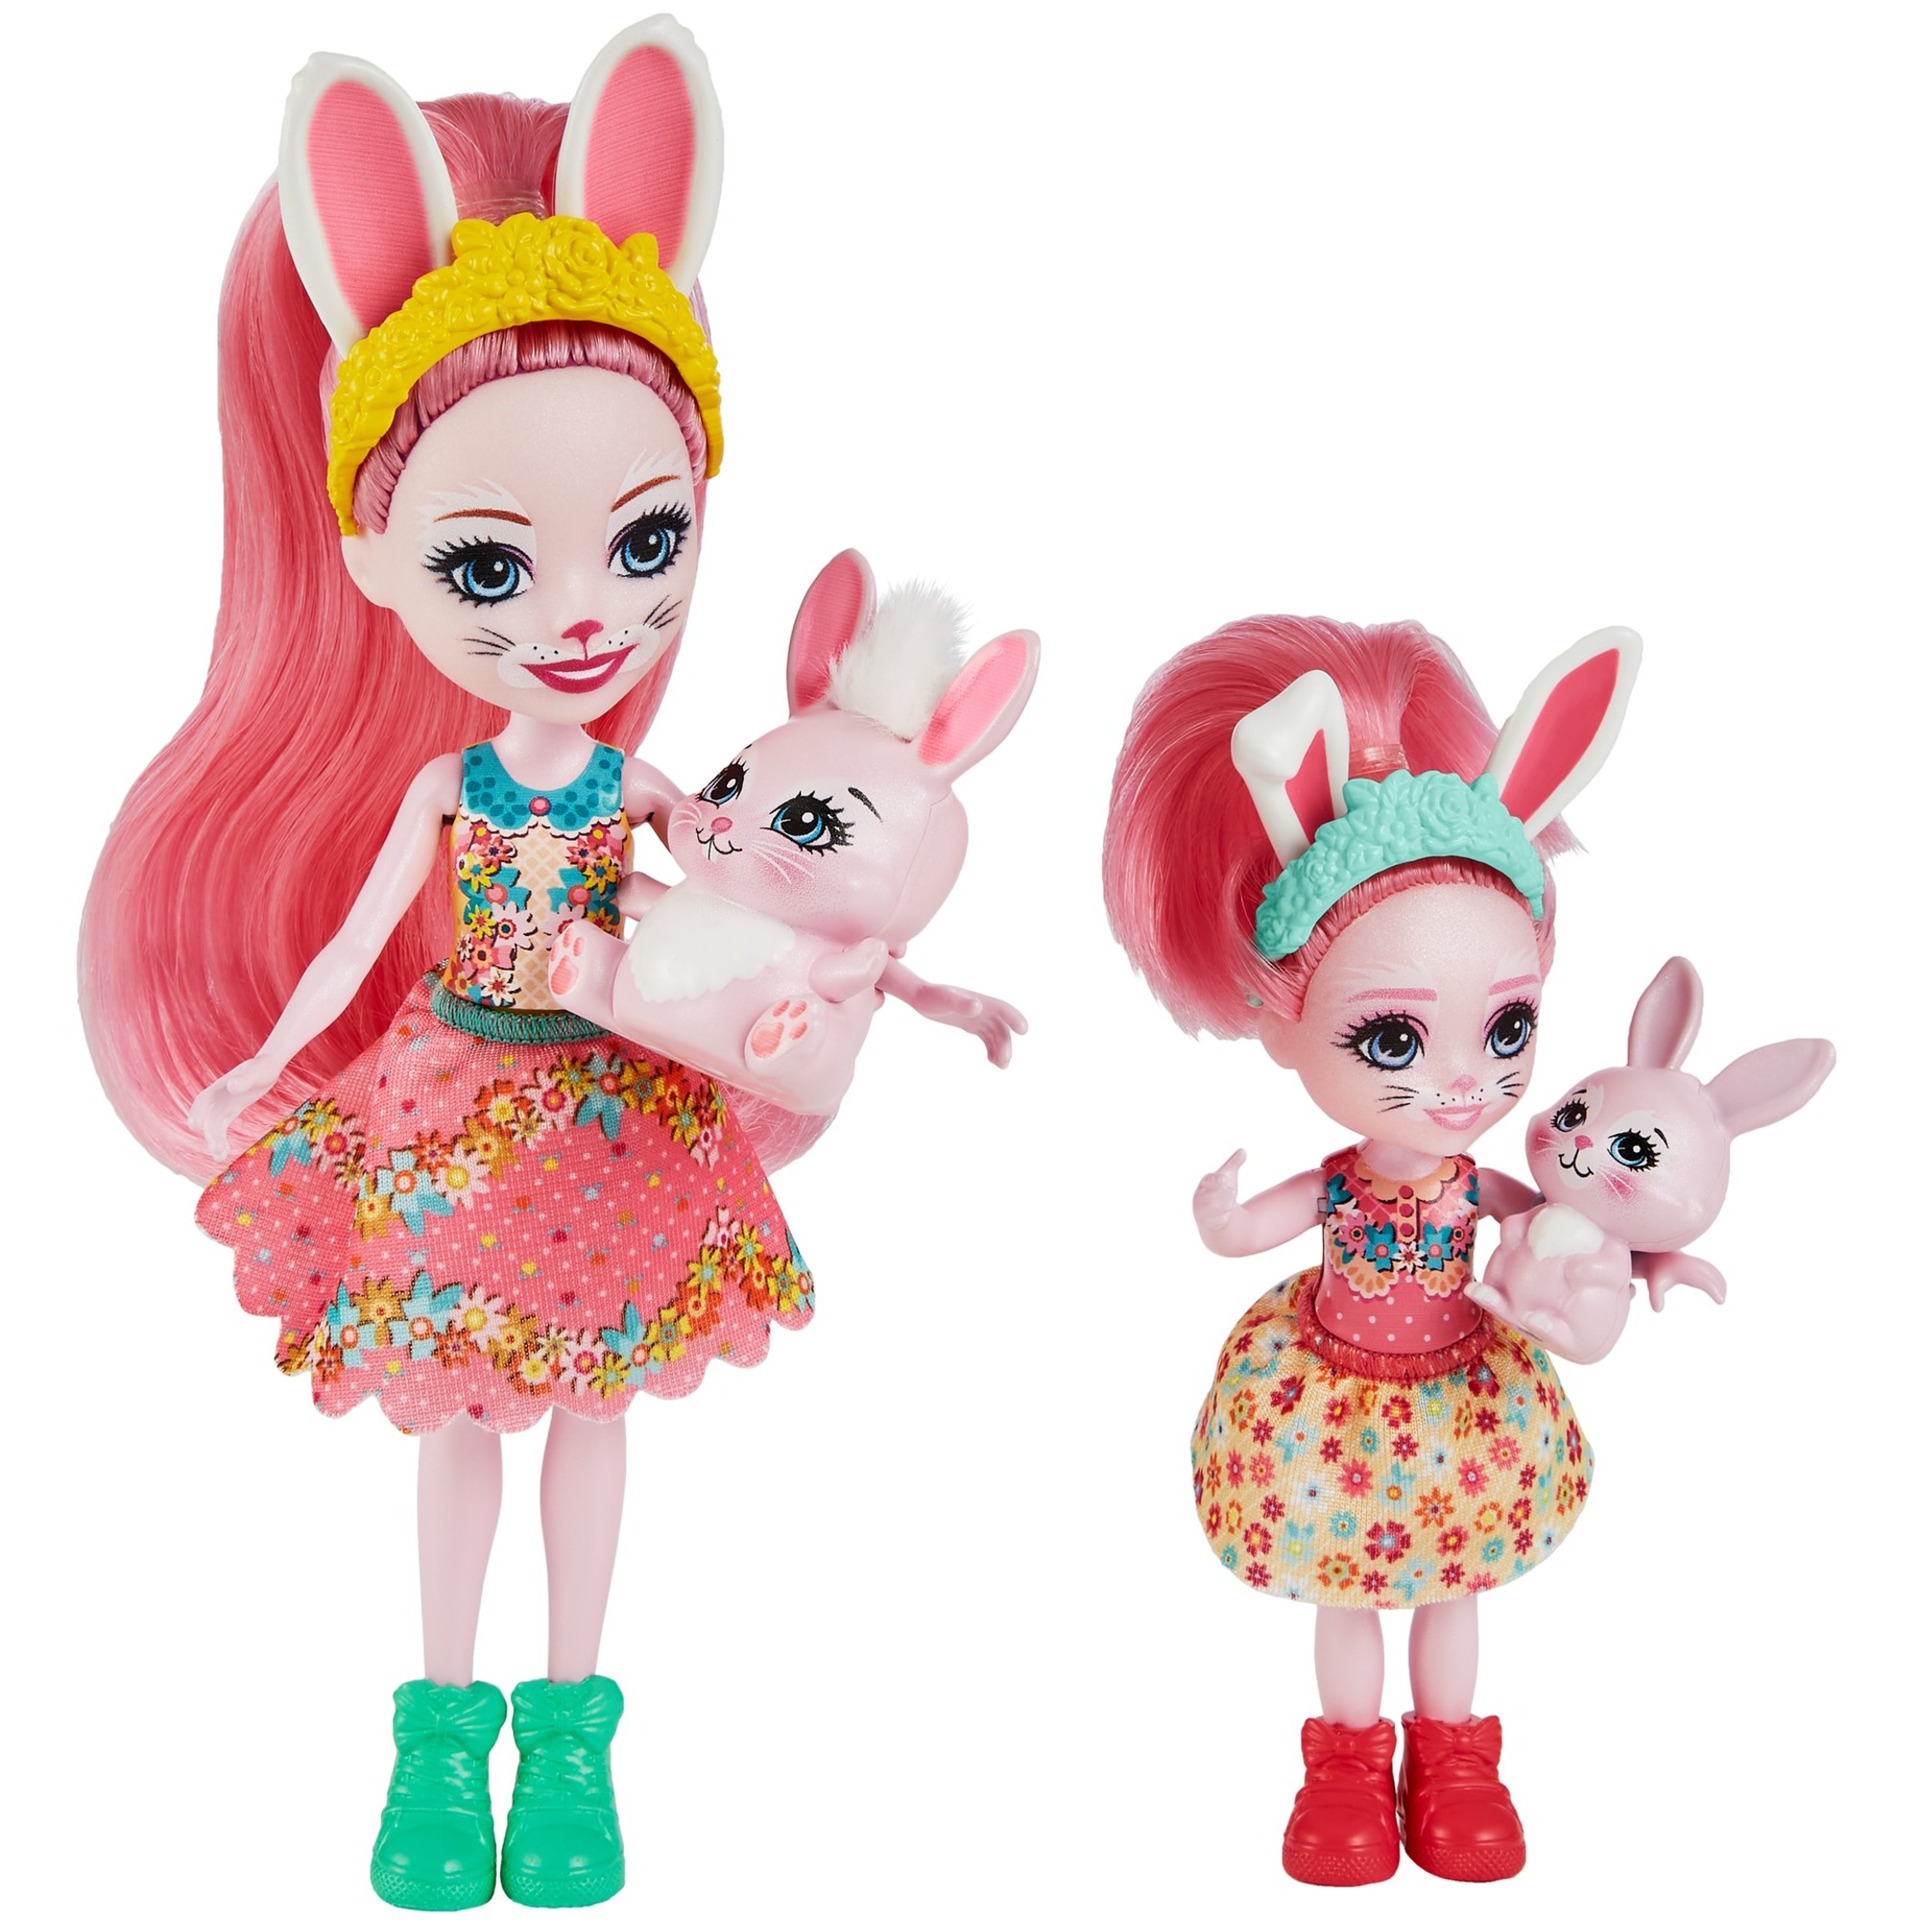 Image of Alternate - Enchantimals Bree Bunny Puppe und kleine Schwester online einkaufen bei Alternate